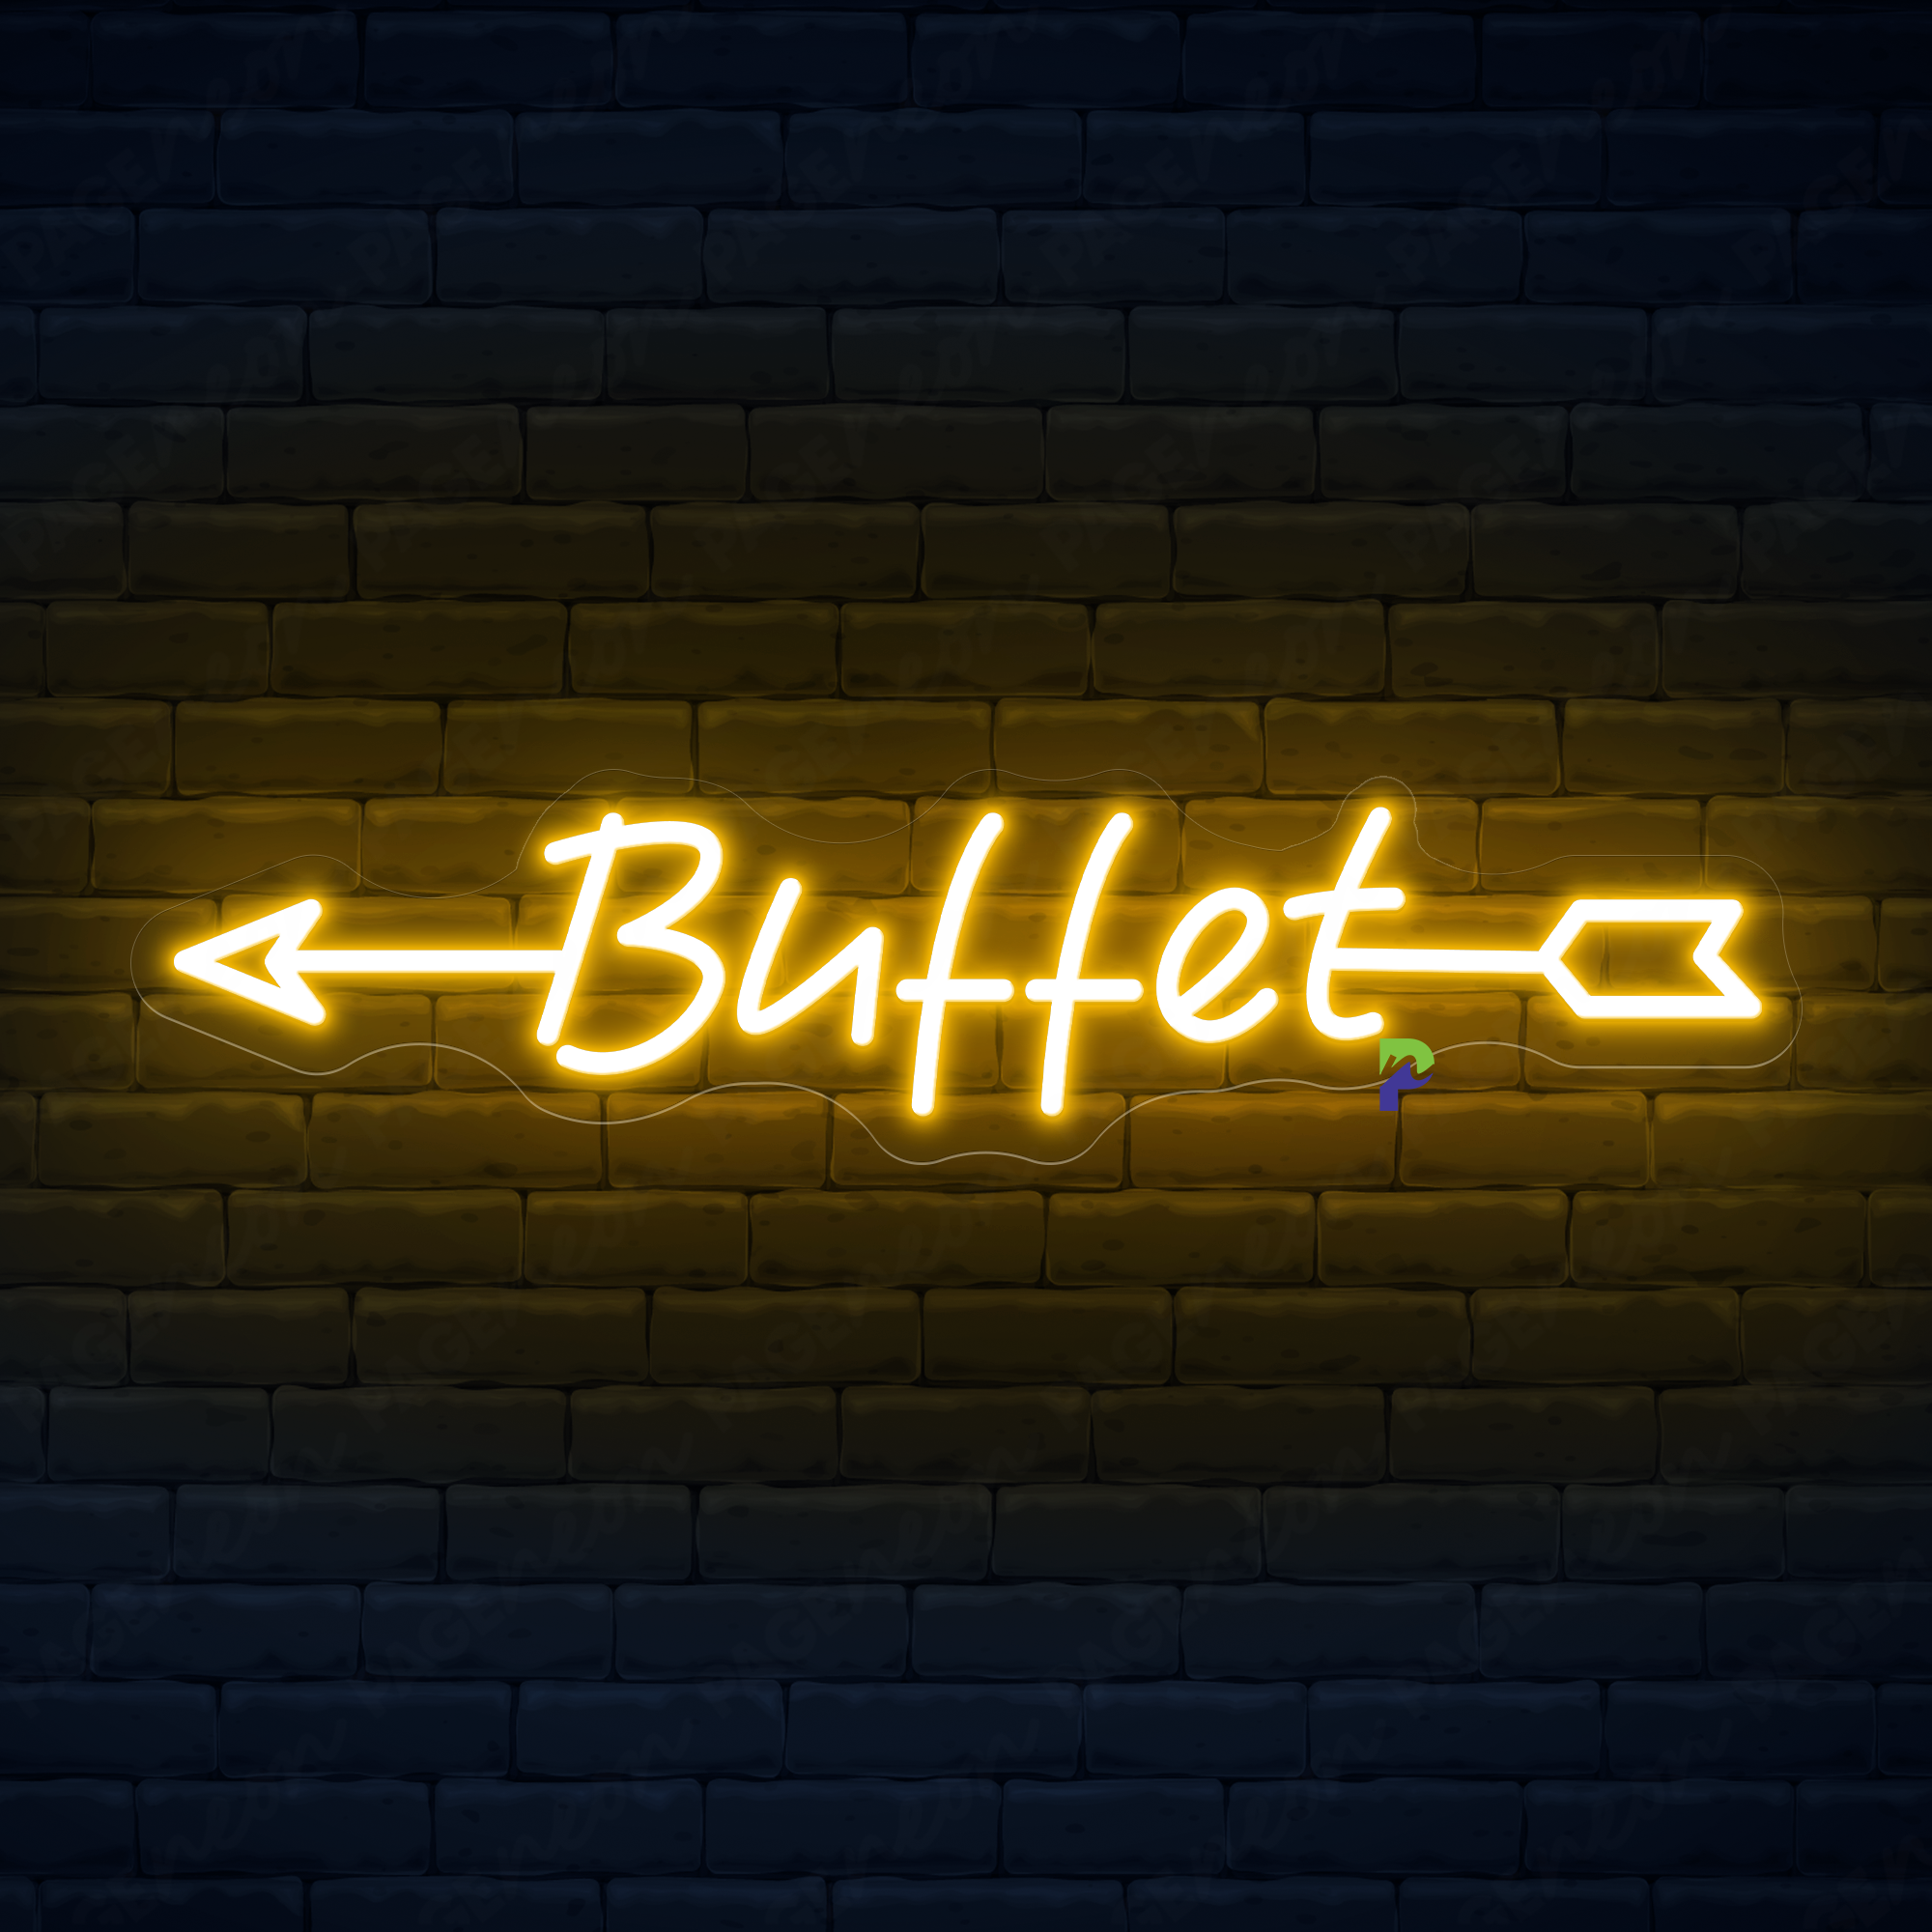 Buffet Neon Sign Custom Arrow Led Light